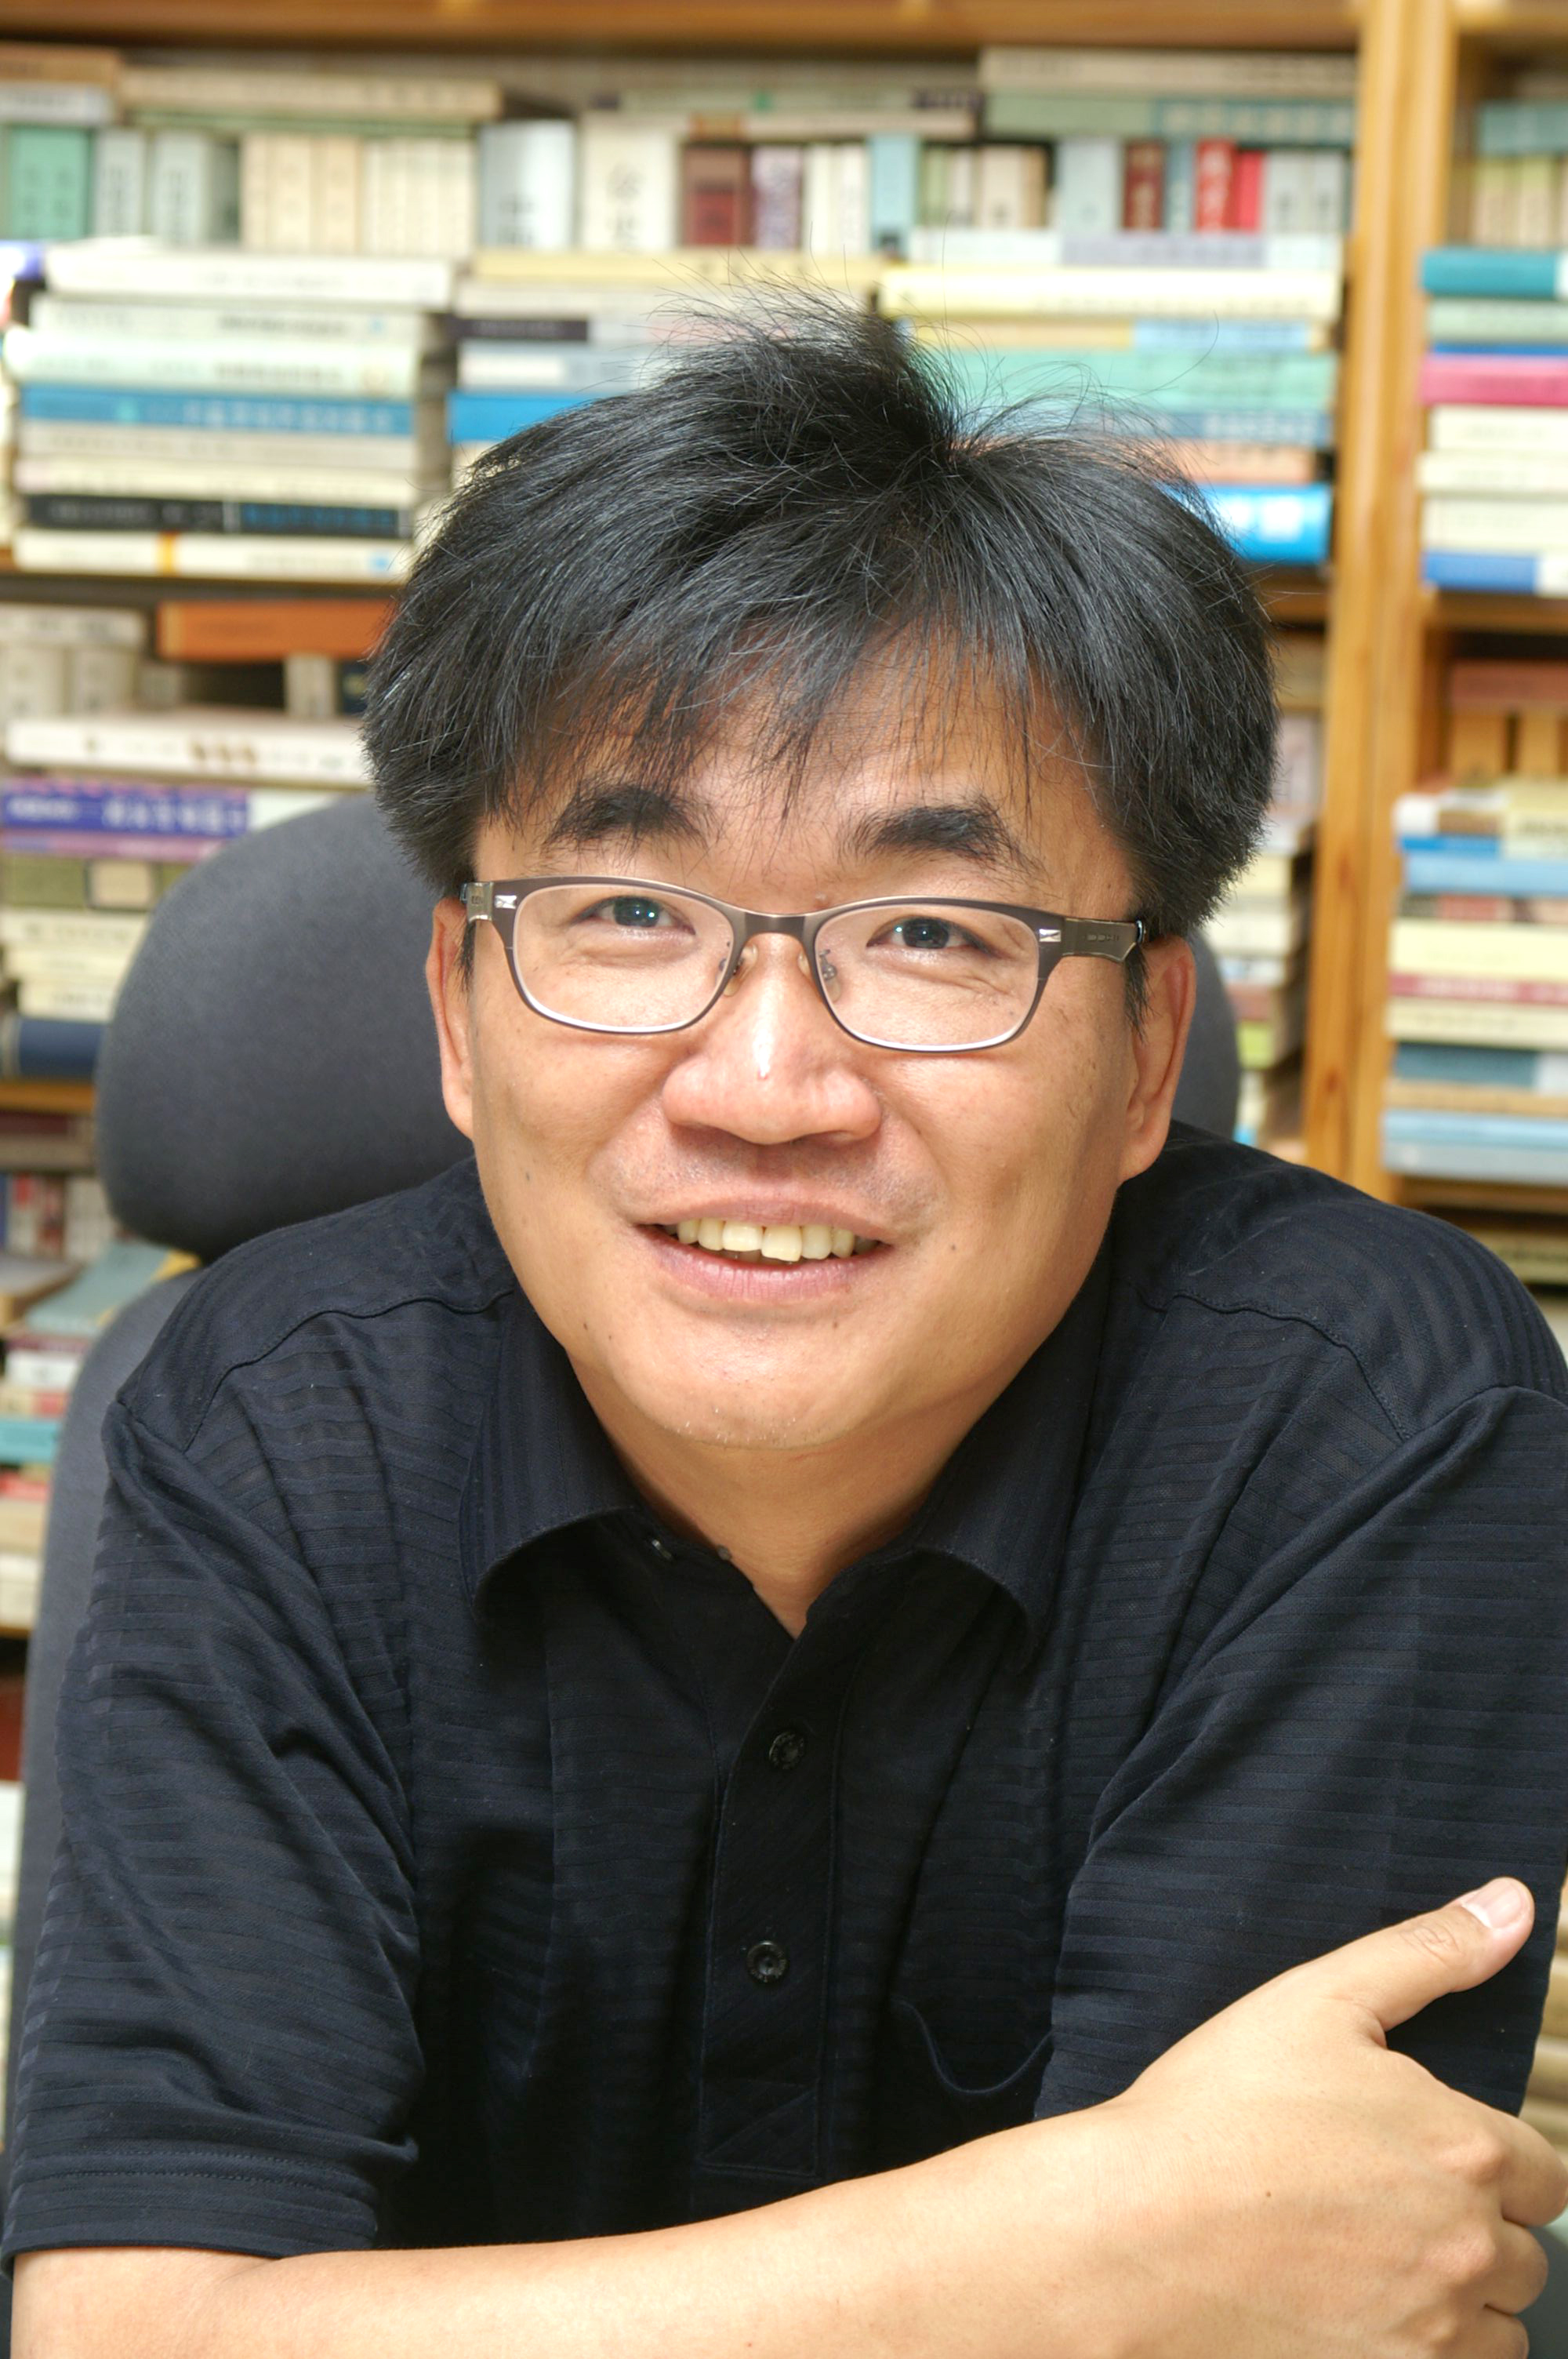 조세현 교수 사진